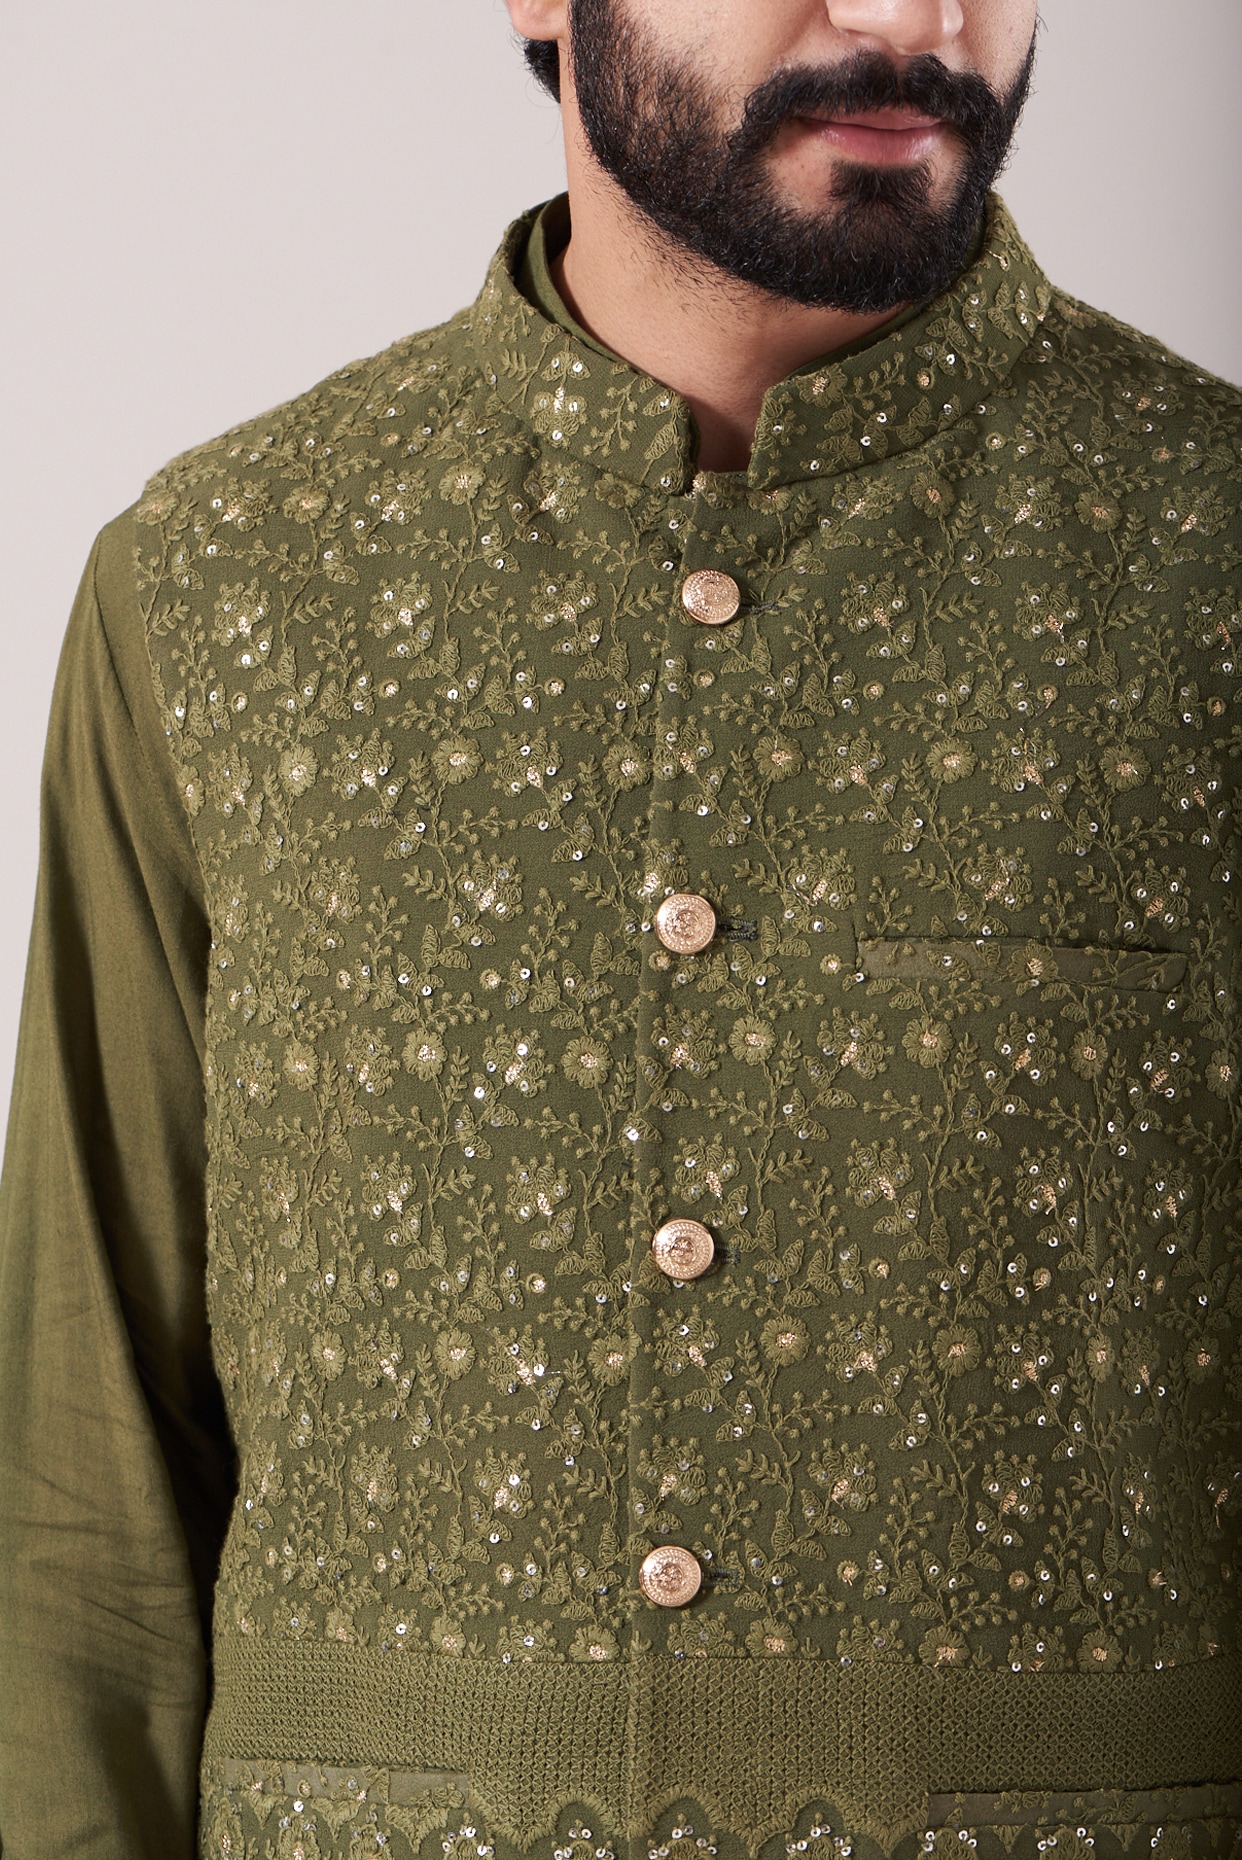 Men's Mehndi Green Embellished Jacket with Black Kurta Pant Set -  Absolutely Desi